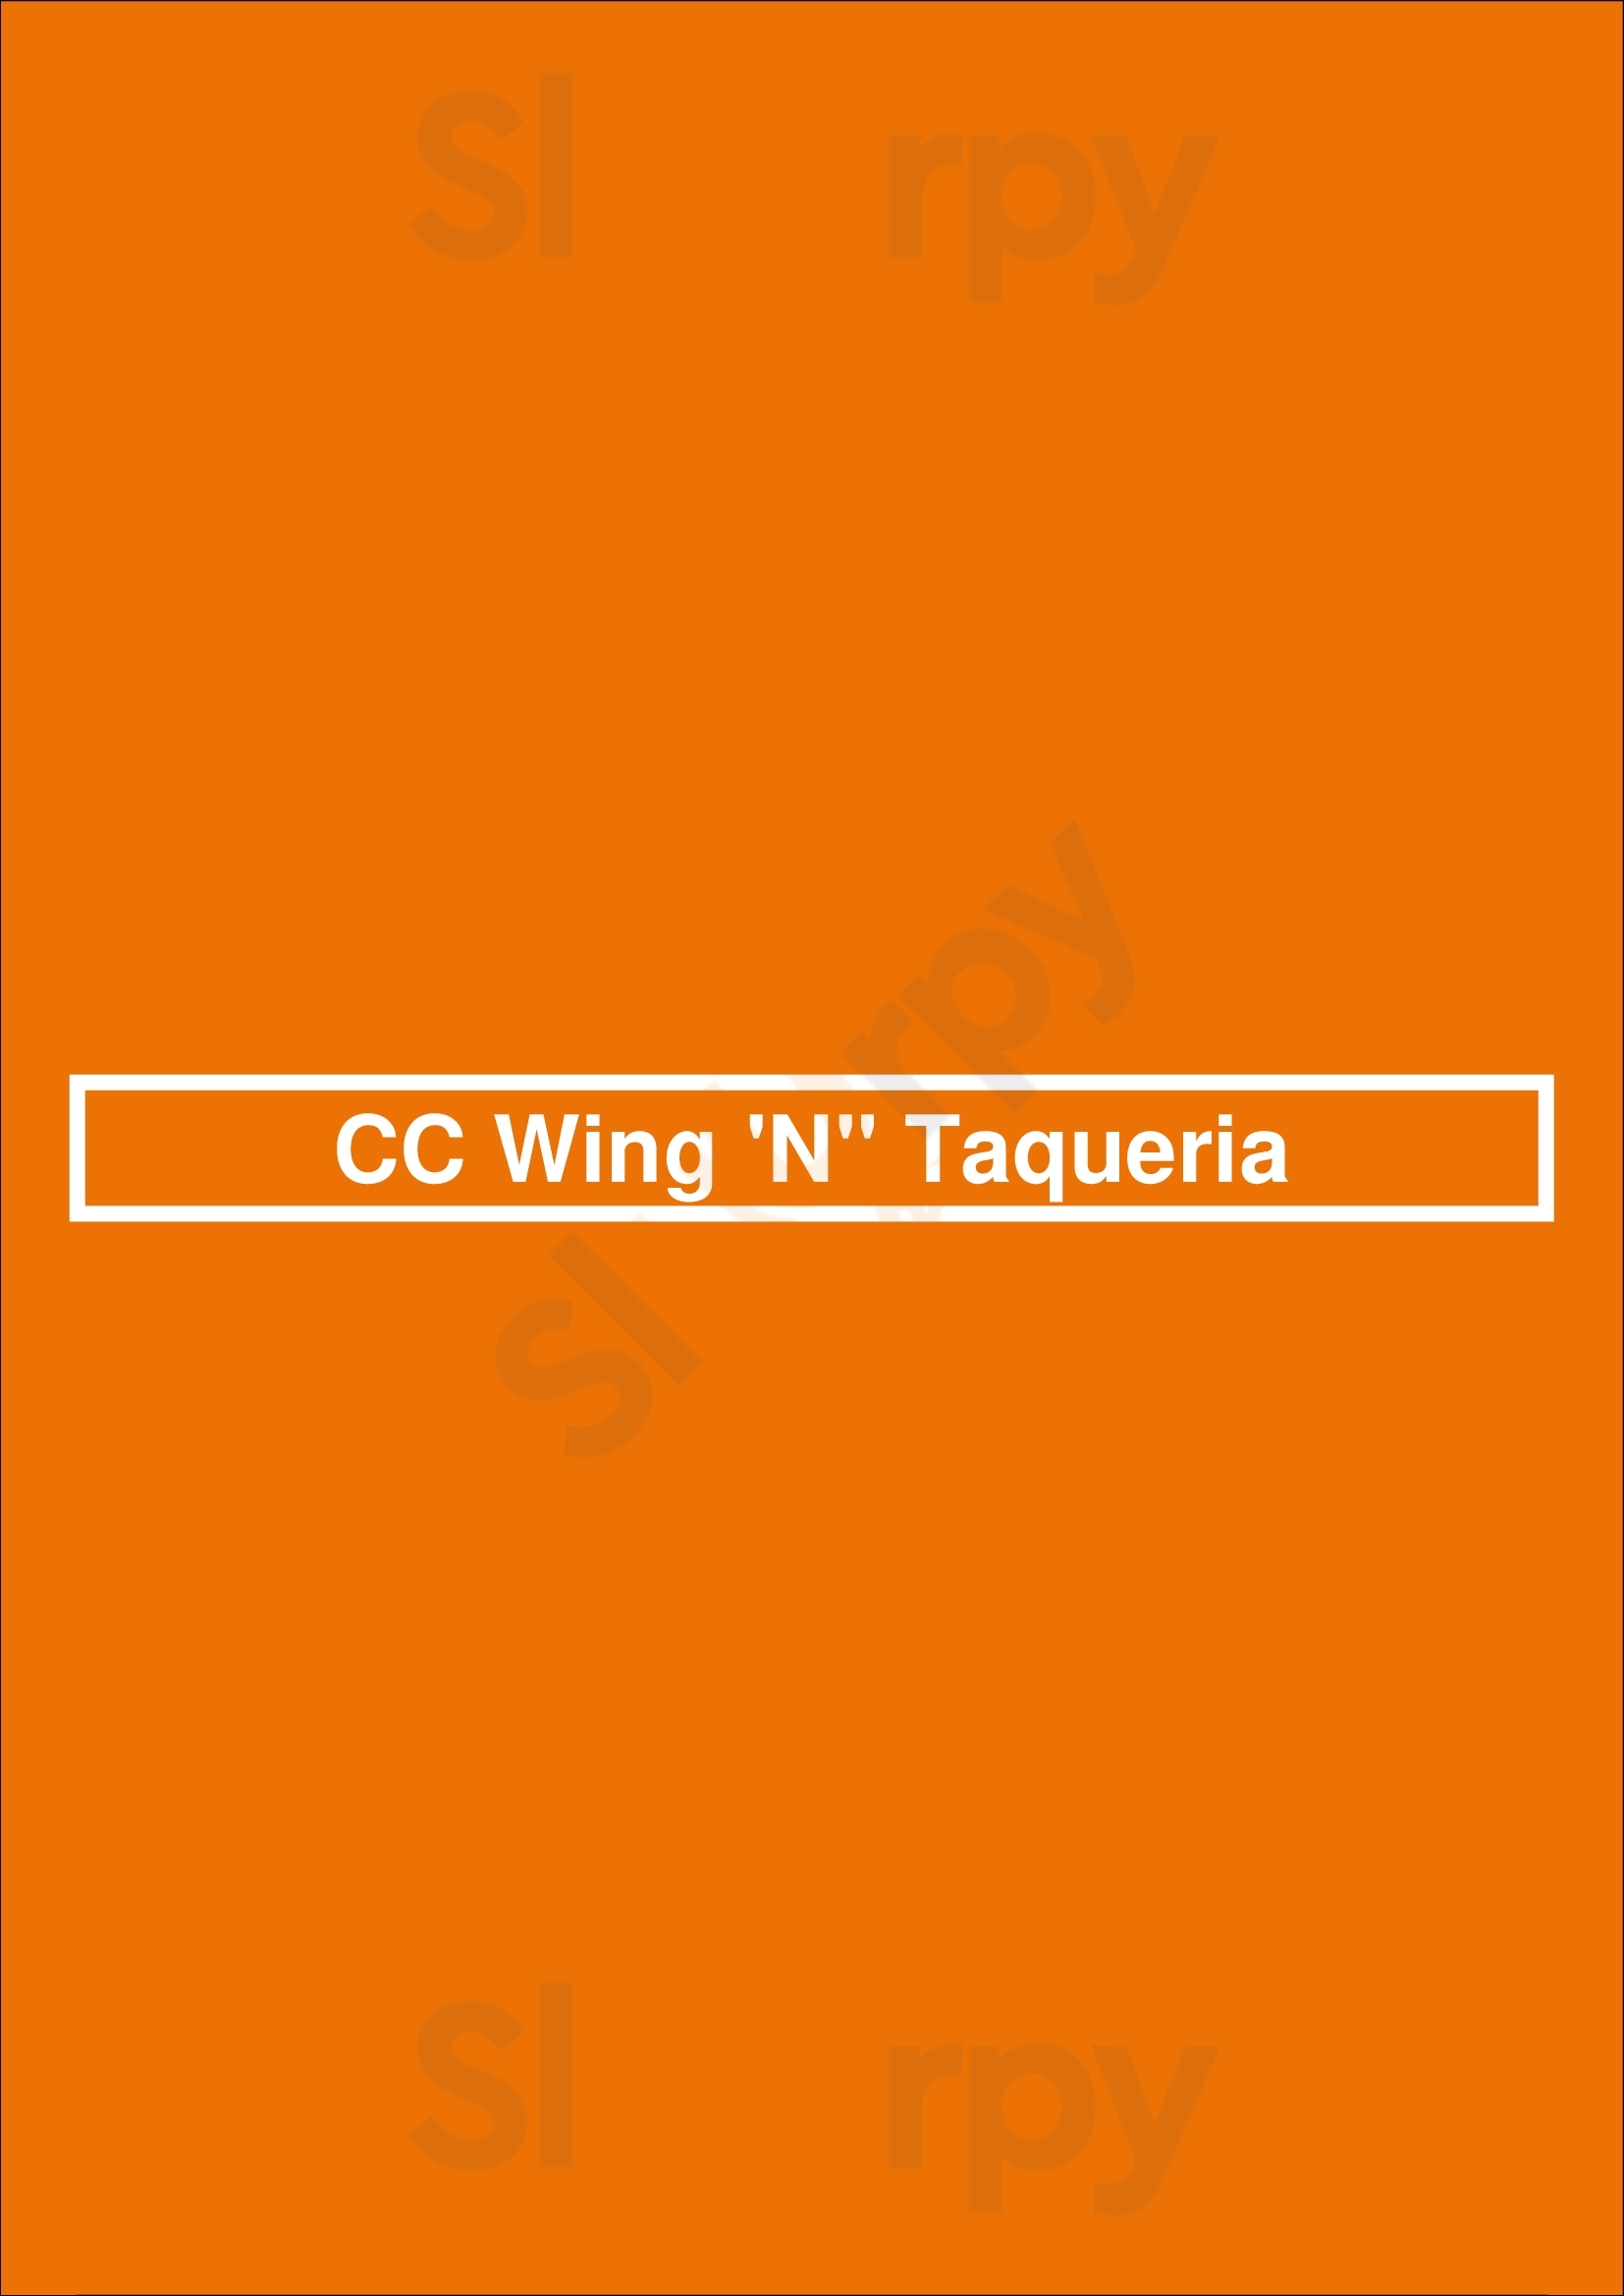 Cc Wing 'n' Taqueria Dallas Menu - 1